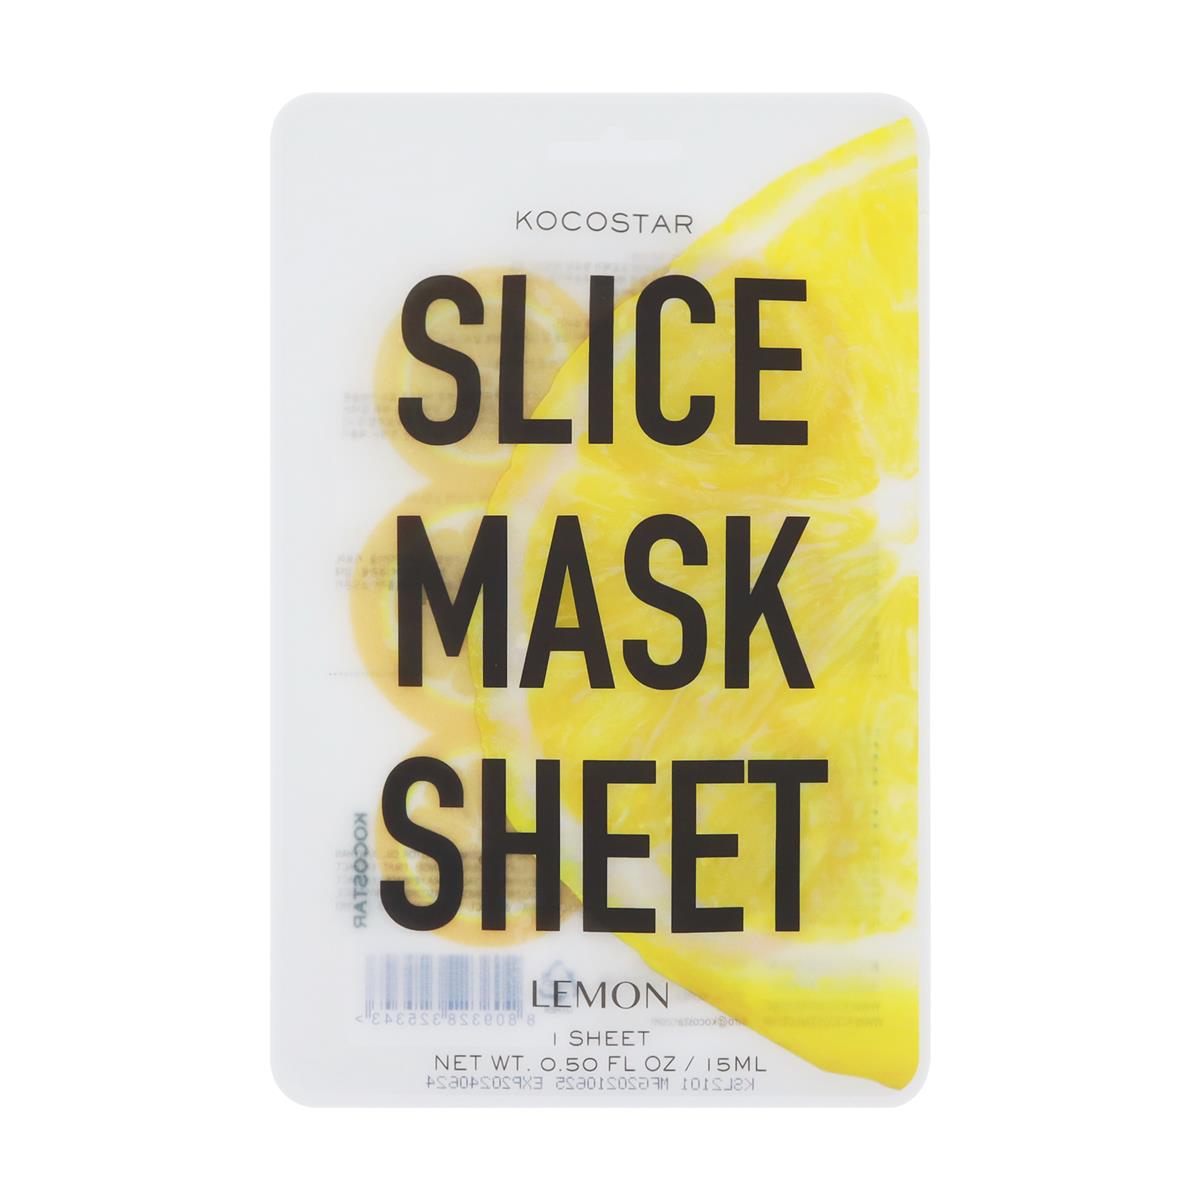 Kocostar Lemon Slice Mask Sheet - 6 slices